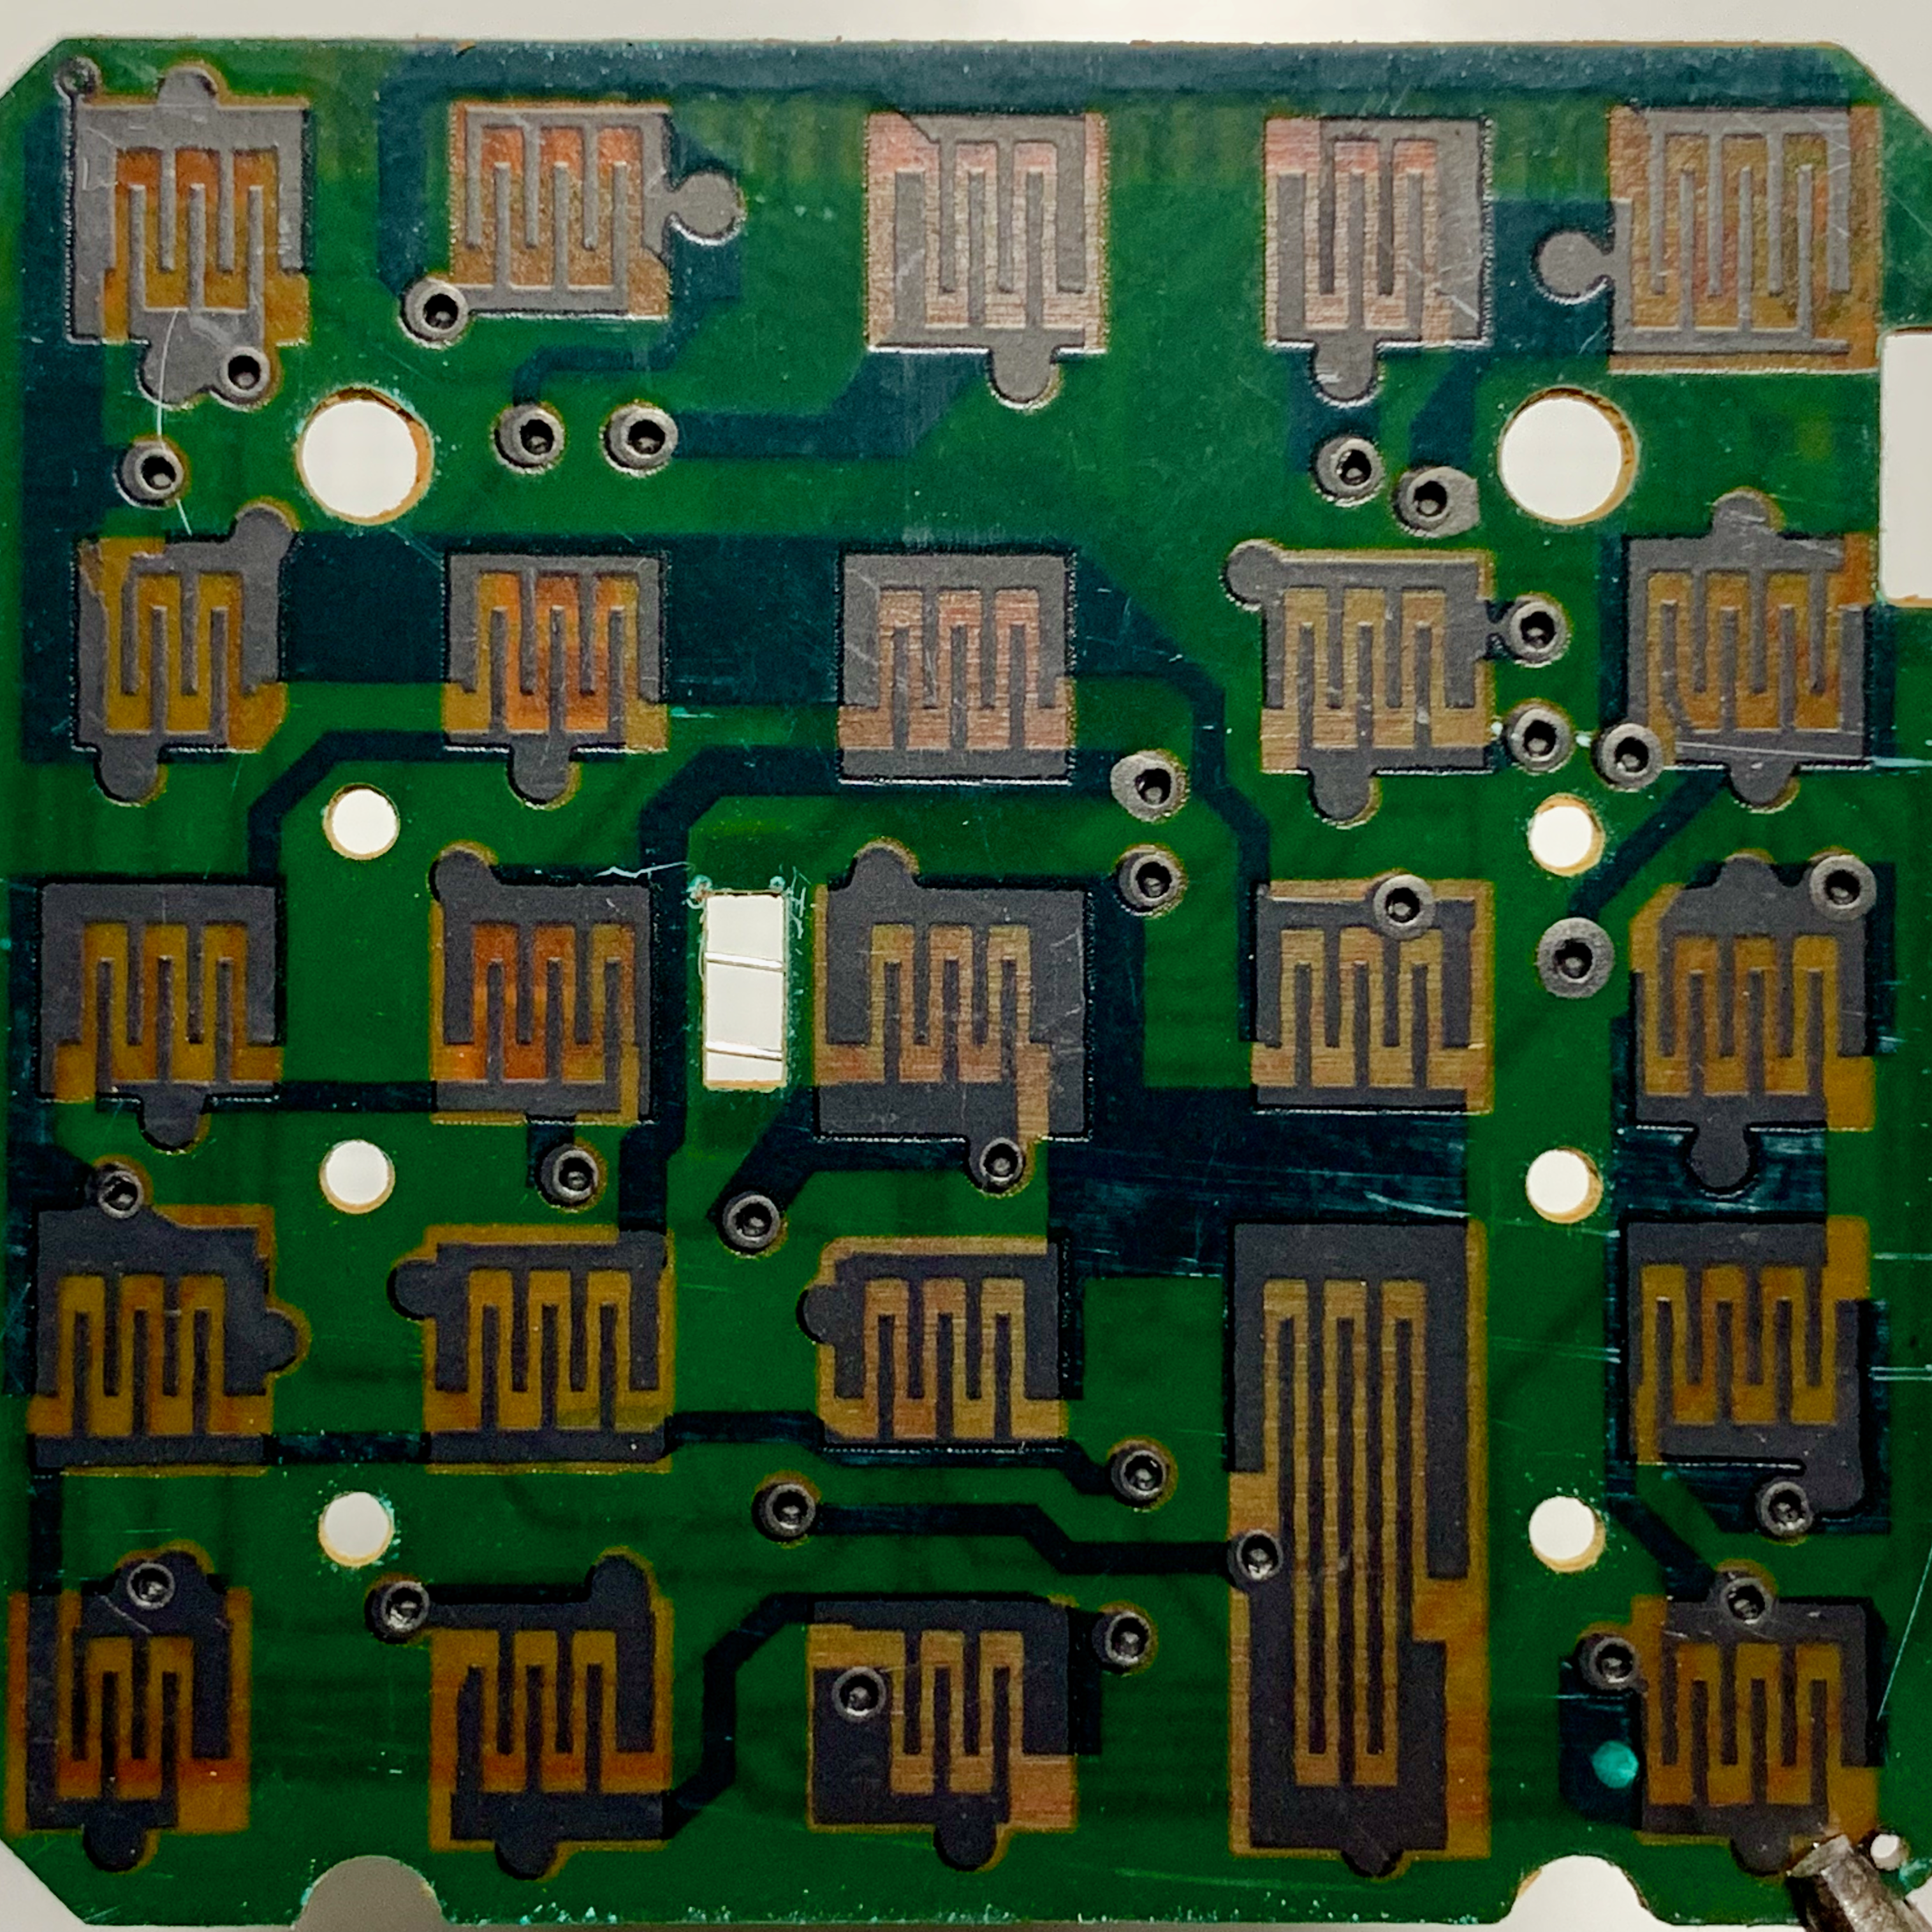 Circuitboard (Back)